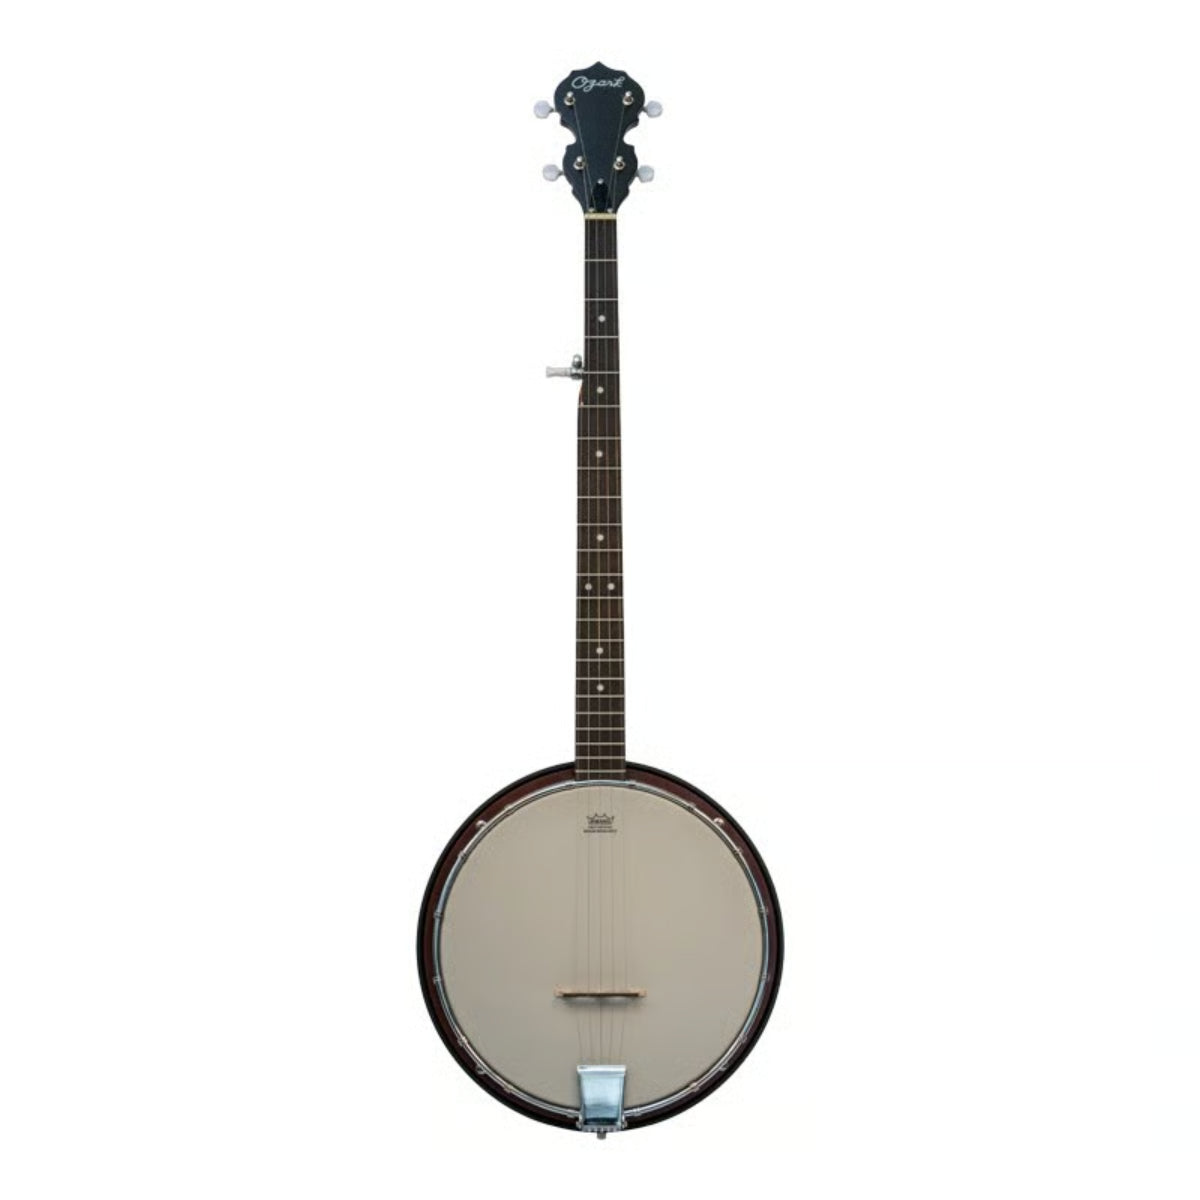 5 String banjo